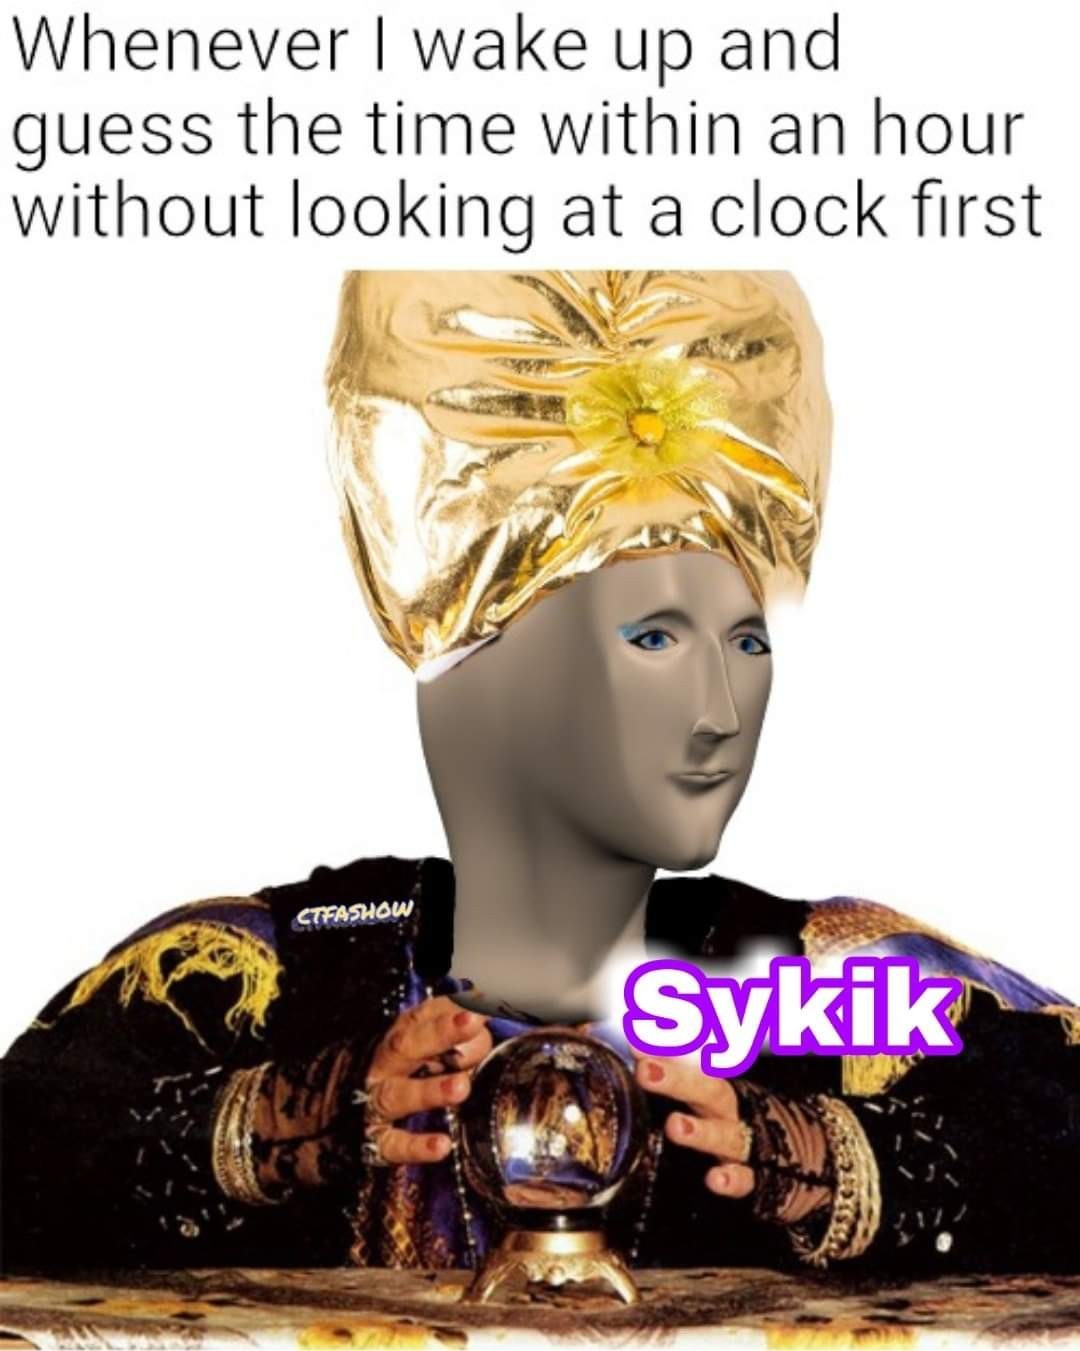 Sykik - meme